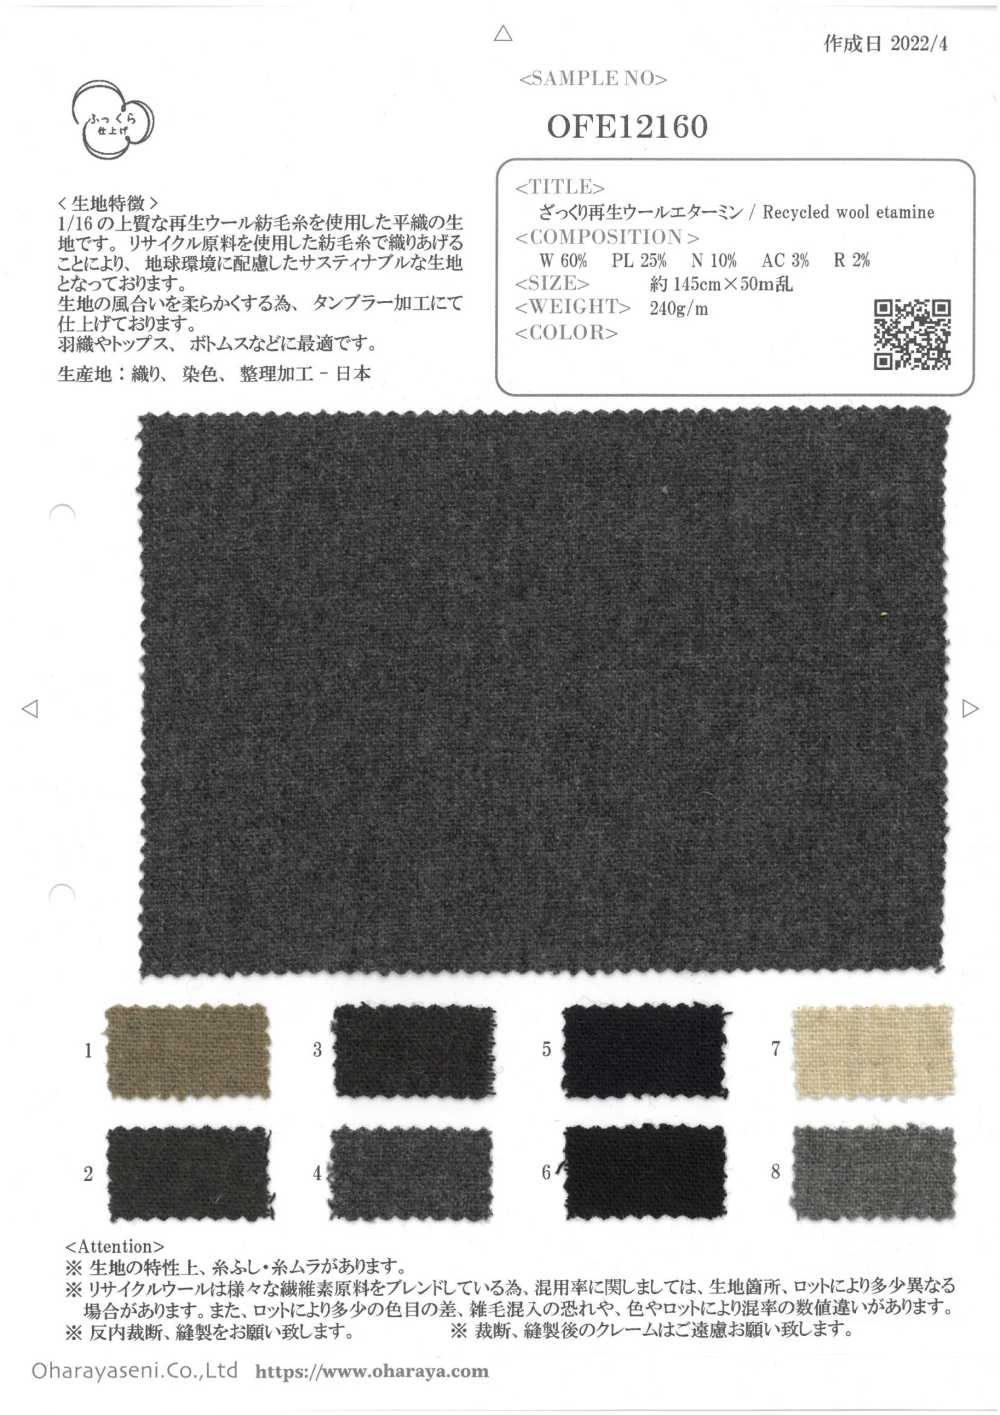 OFE12160 Etamina De Lana Aproximadamente Reciclada[Fabrica Textil] Oharayaseni